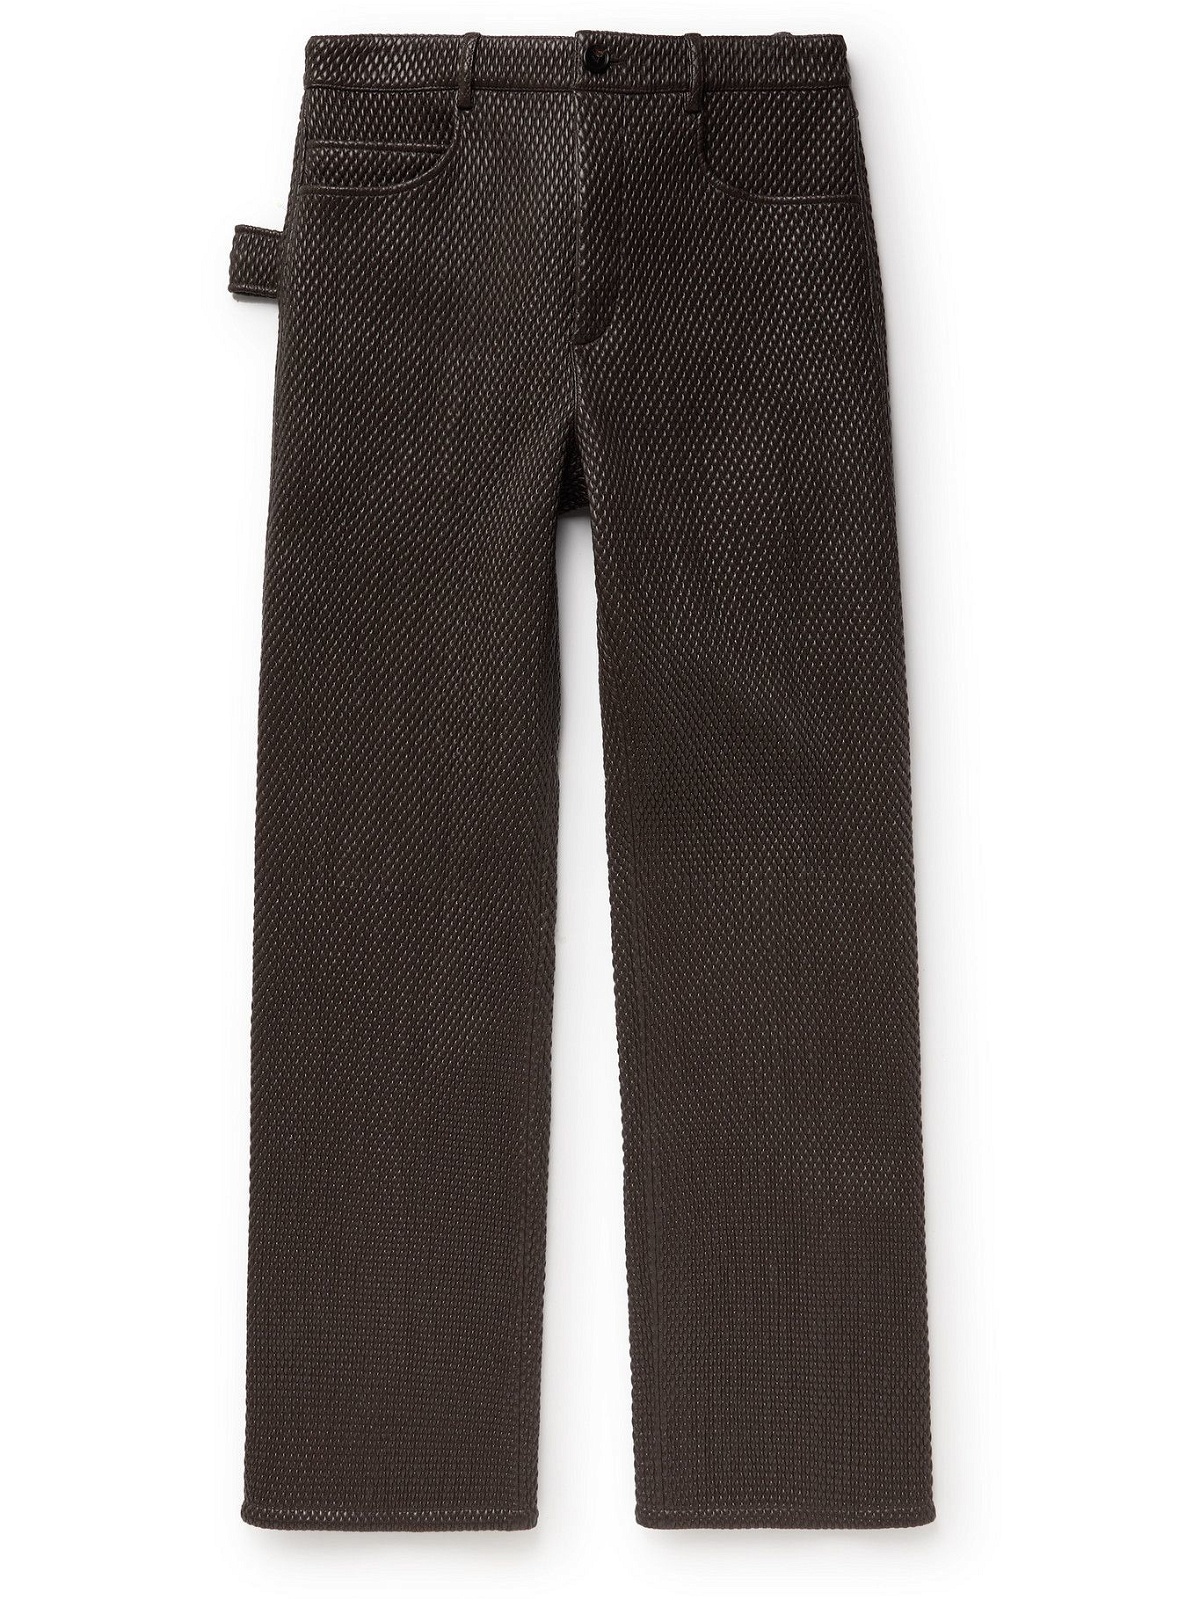 Photo: BOTTEGA VENETA - Woven Leather Trousers - Brown